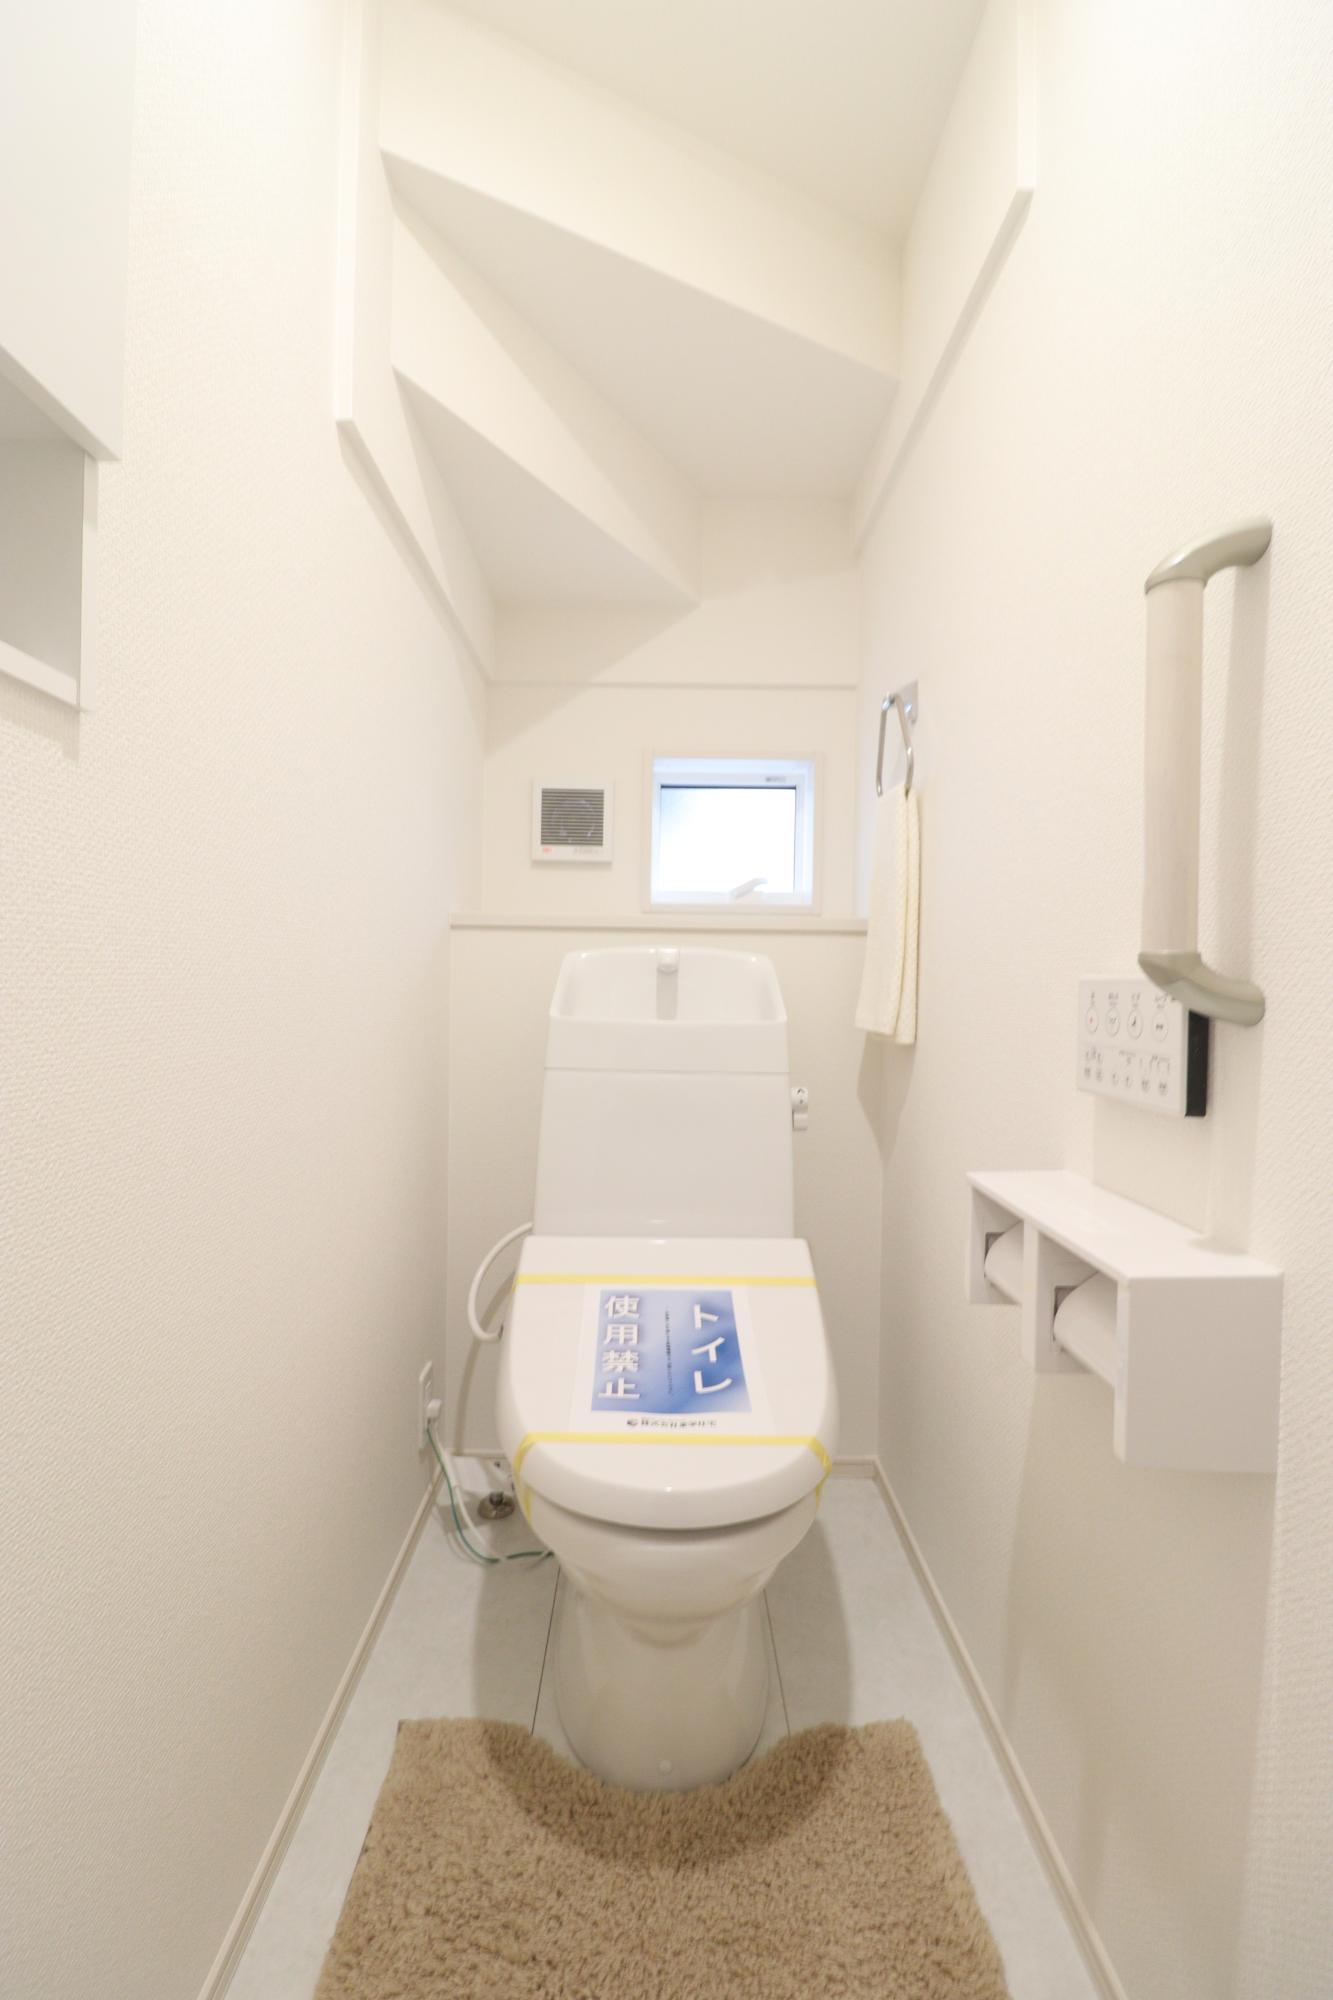 【トイレ】　使い勝手に優れたワイヤレスリモコン式の温水洗浄便座!さらに収納棚も設置しているのでトイレ用品もスッキリと収納することができます♪